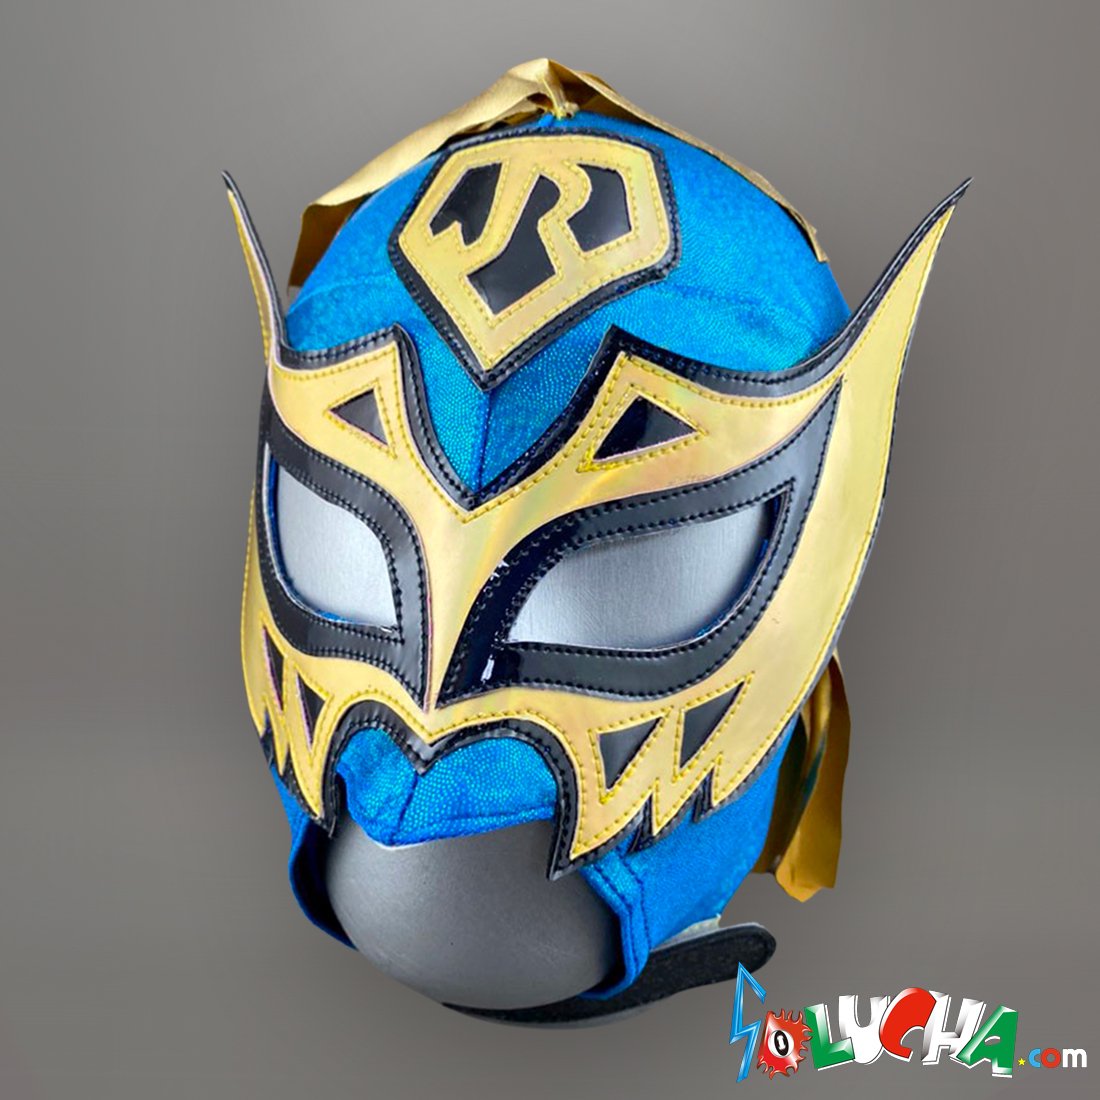 SOLUCHA.com / 【CMLL】ボラドールJr. ハイグレード応援用マスク